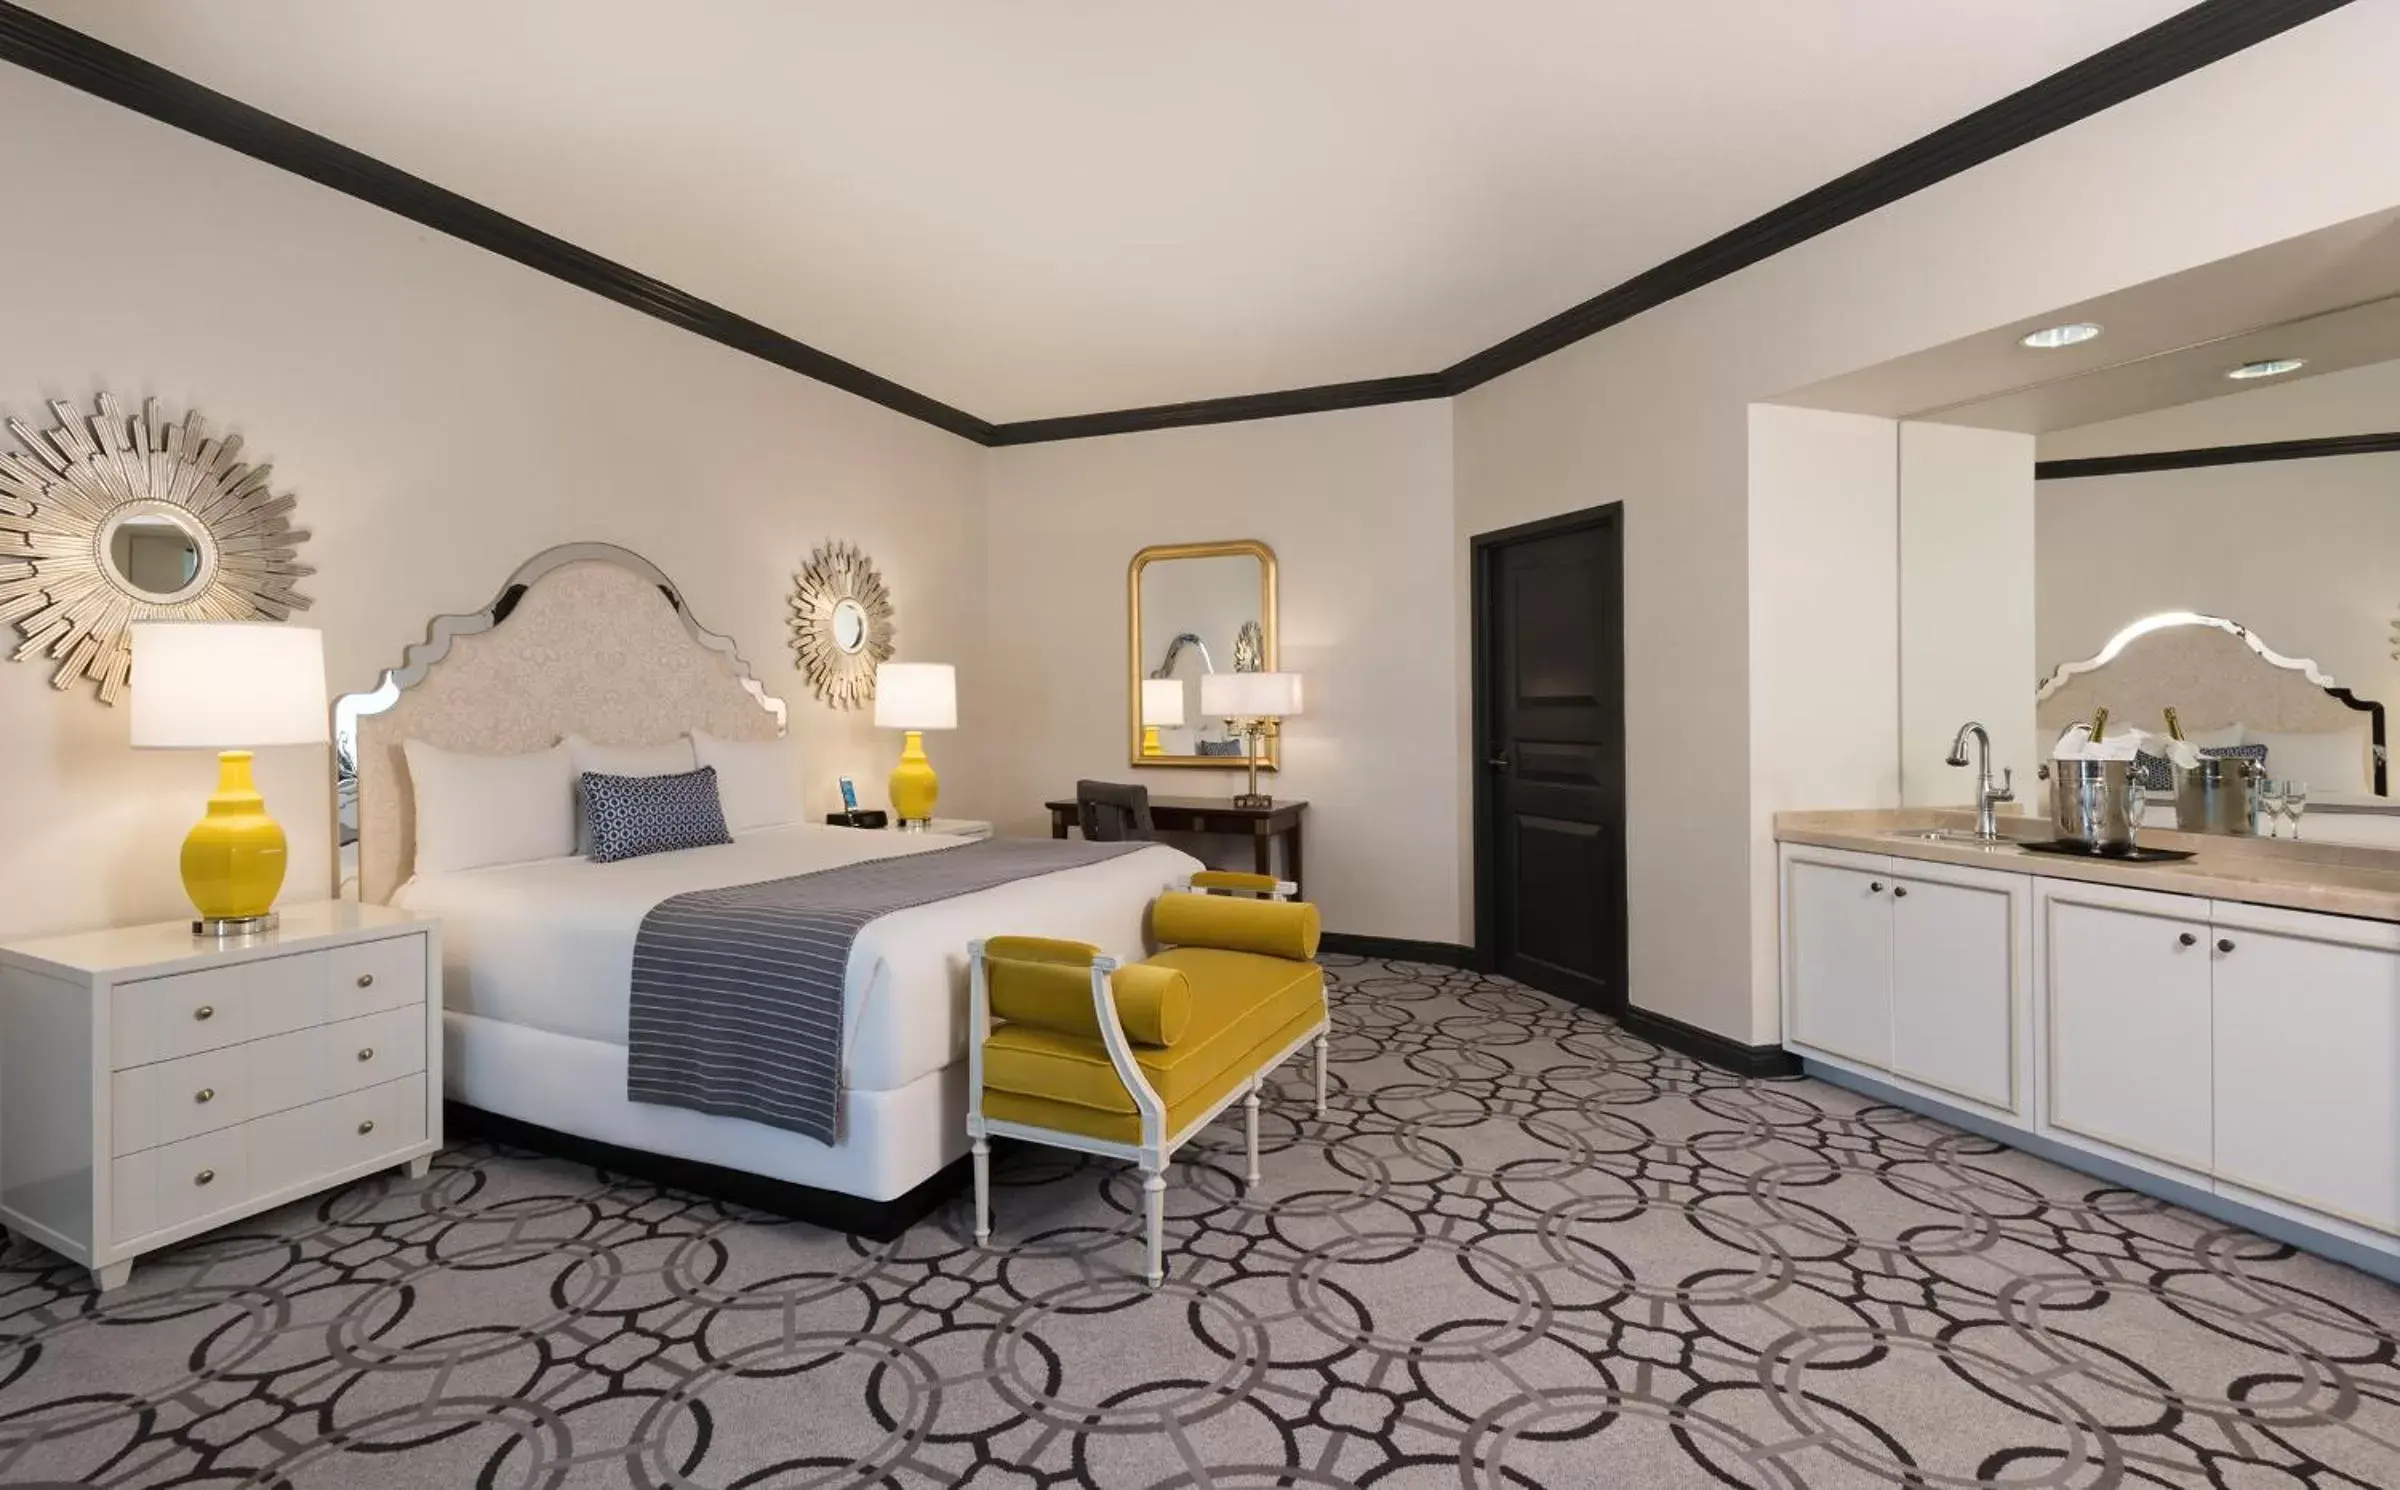 Bedroom, Room Photo in Paris Las Vegas Hotel & Casino